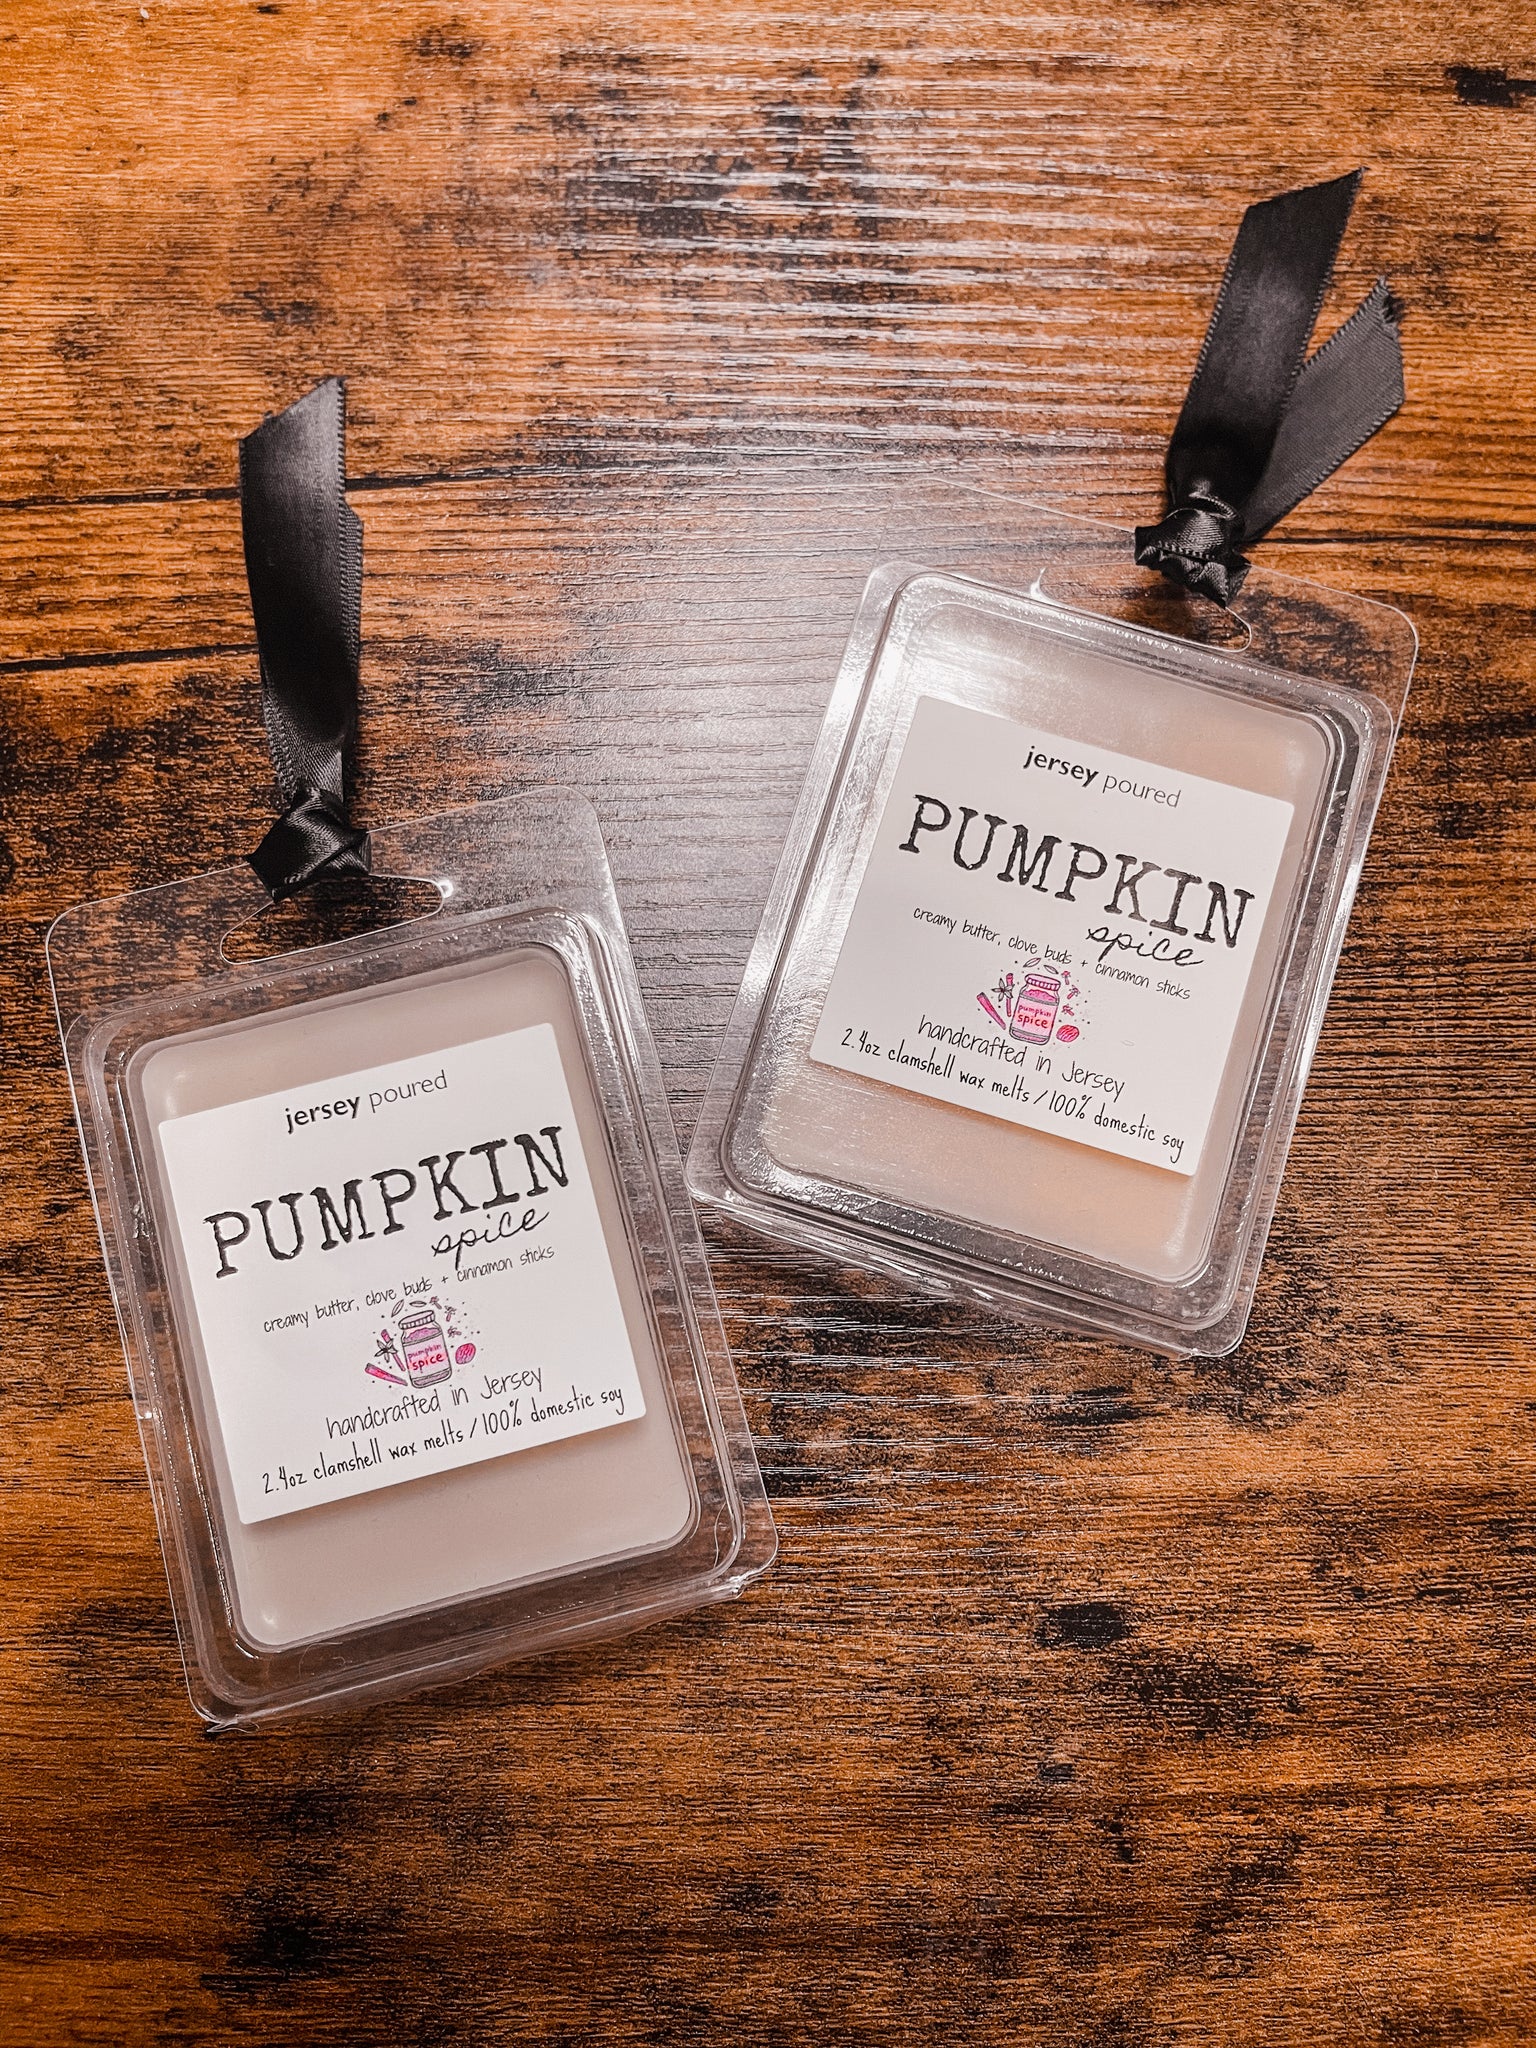 Pumpkin Spice Clamshell Wax Melts – Jersey Poured